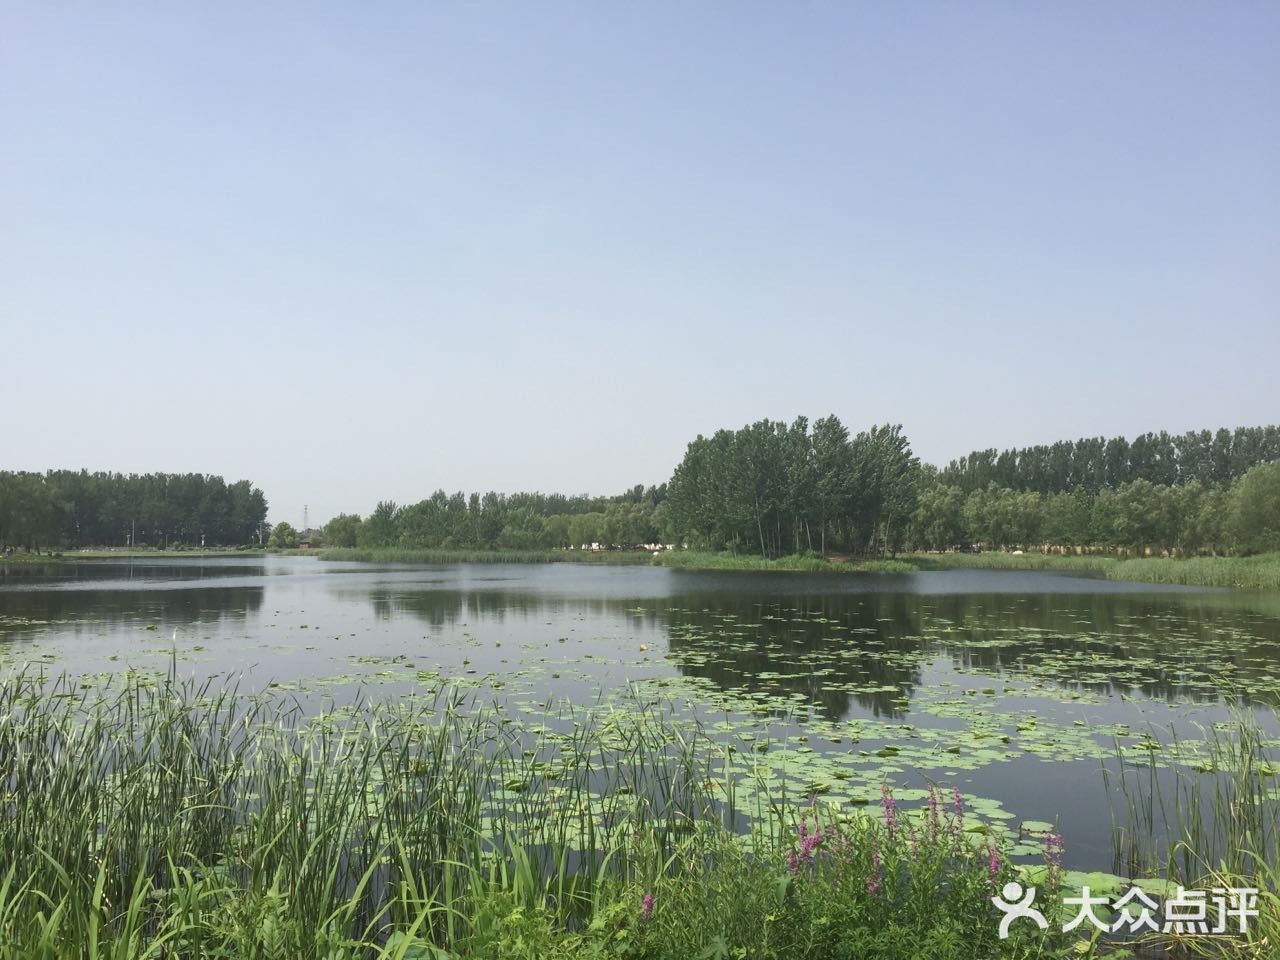 北京房山长沟湿地公园位于北京市房山区长沟镇